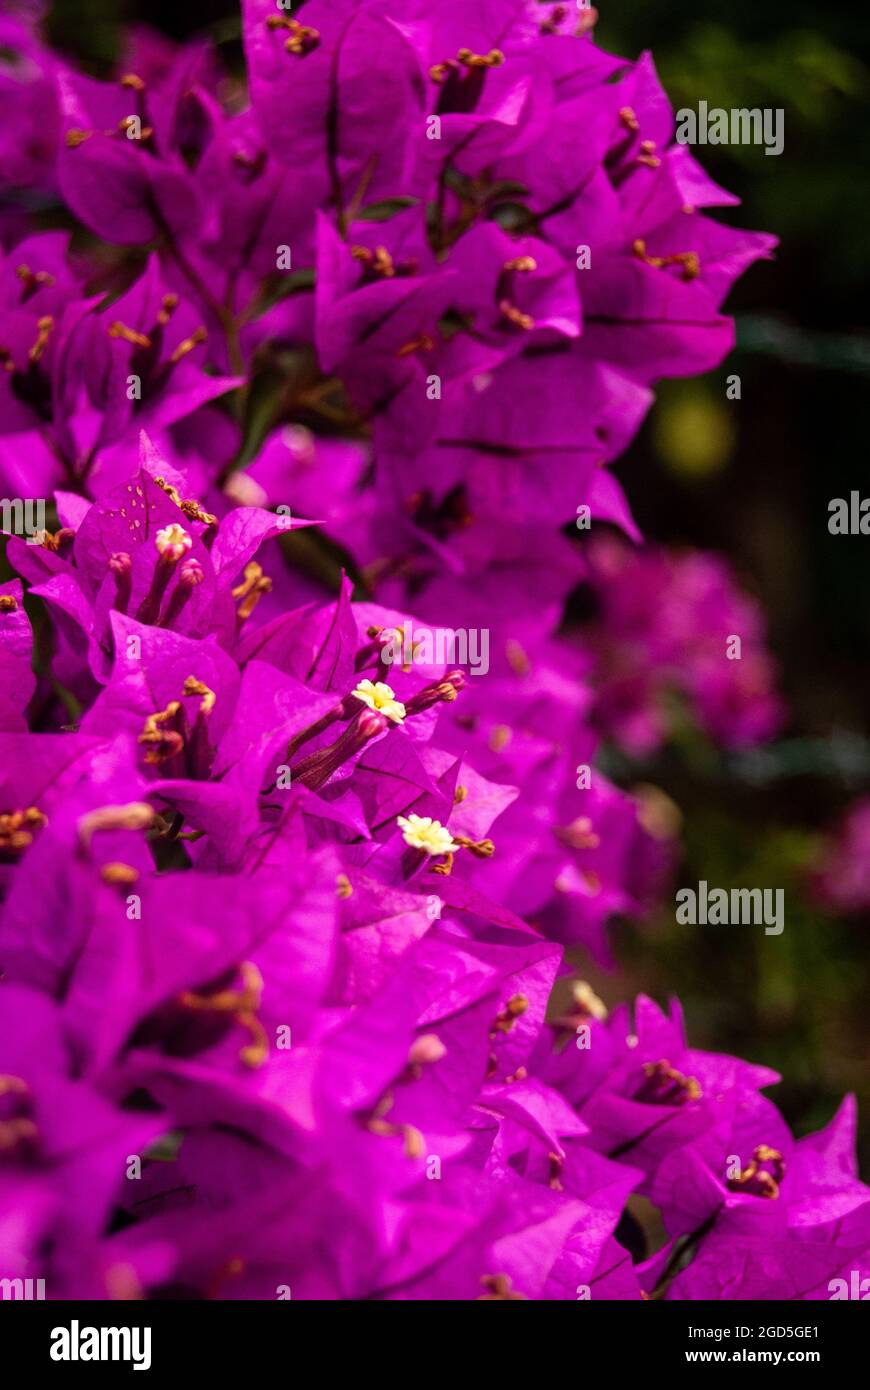 Weiße Blüten von Bougainvillea Glabra, die im violetten Meer aus Blättern blühen - Makro, selektiver Fokus. Stockfoto